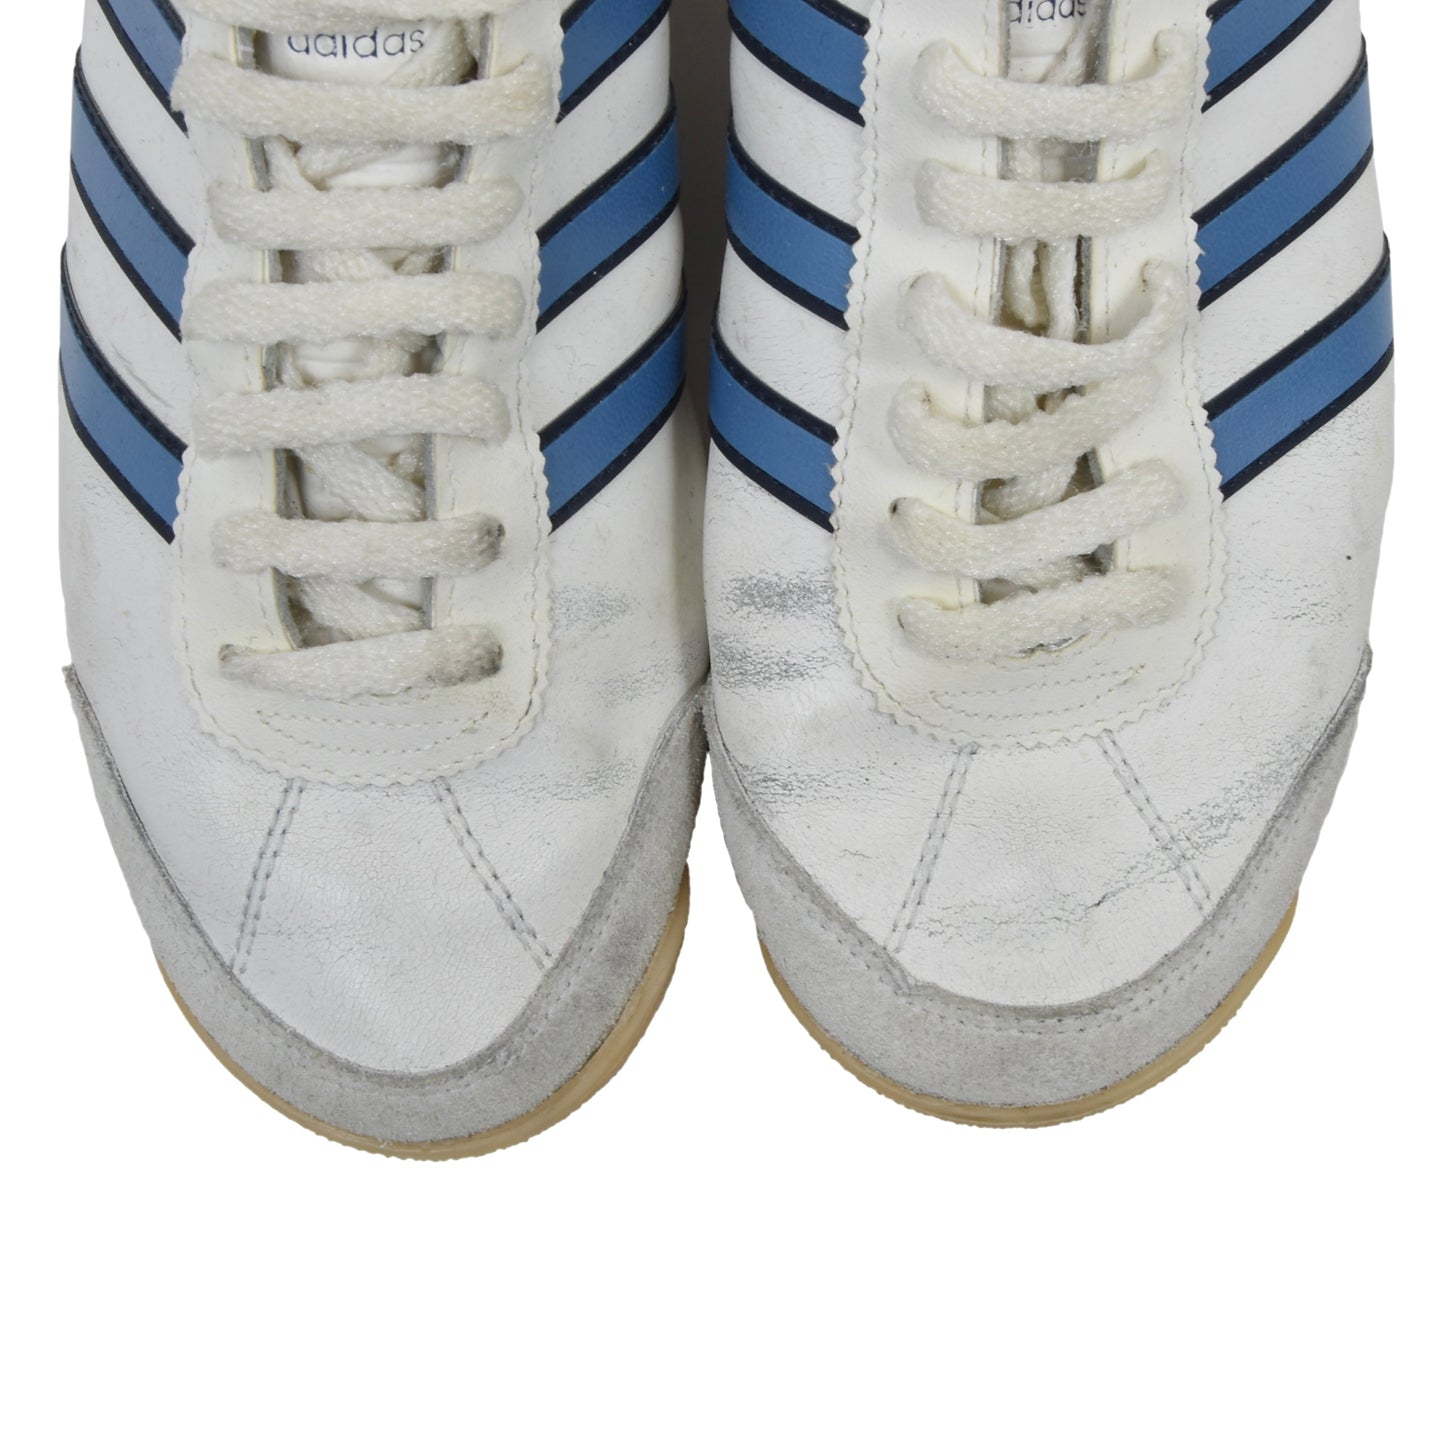 Vintage Adidas Paris Sneakers Size 6 - White